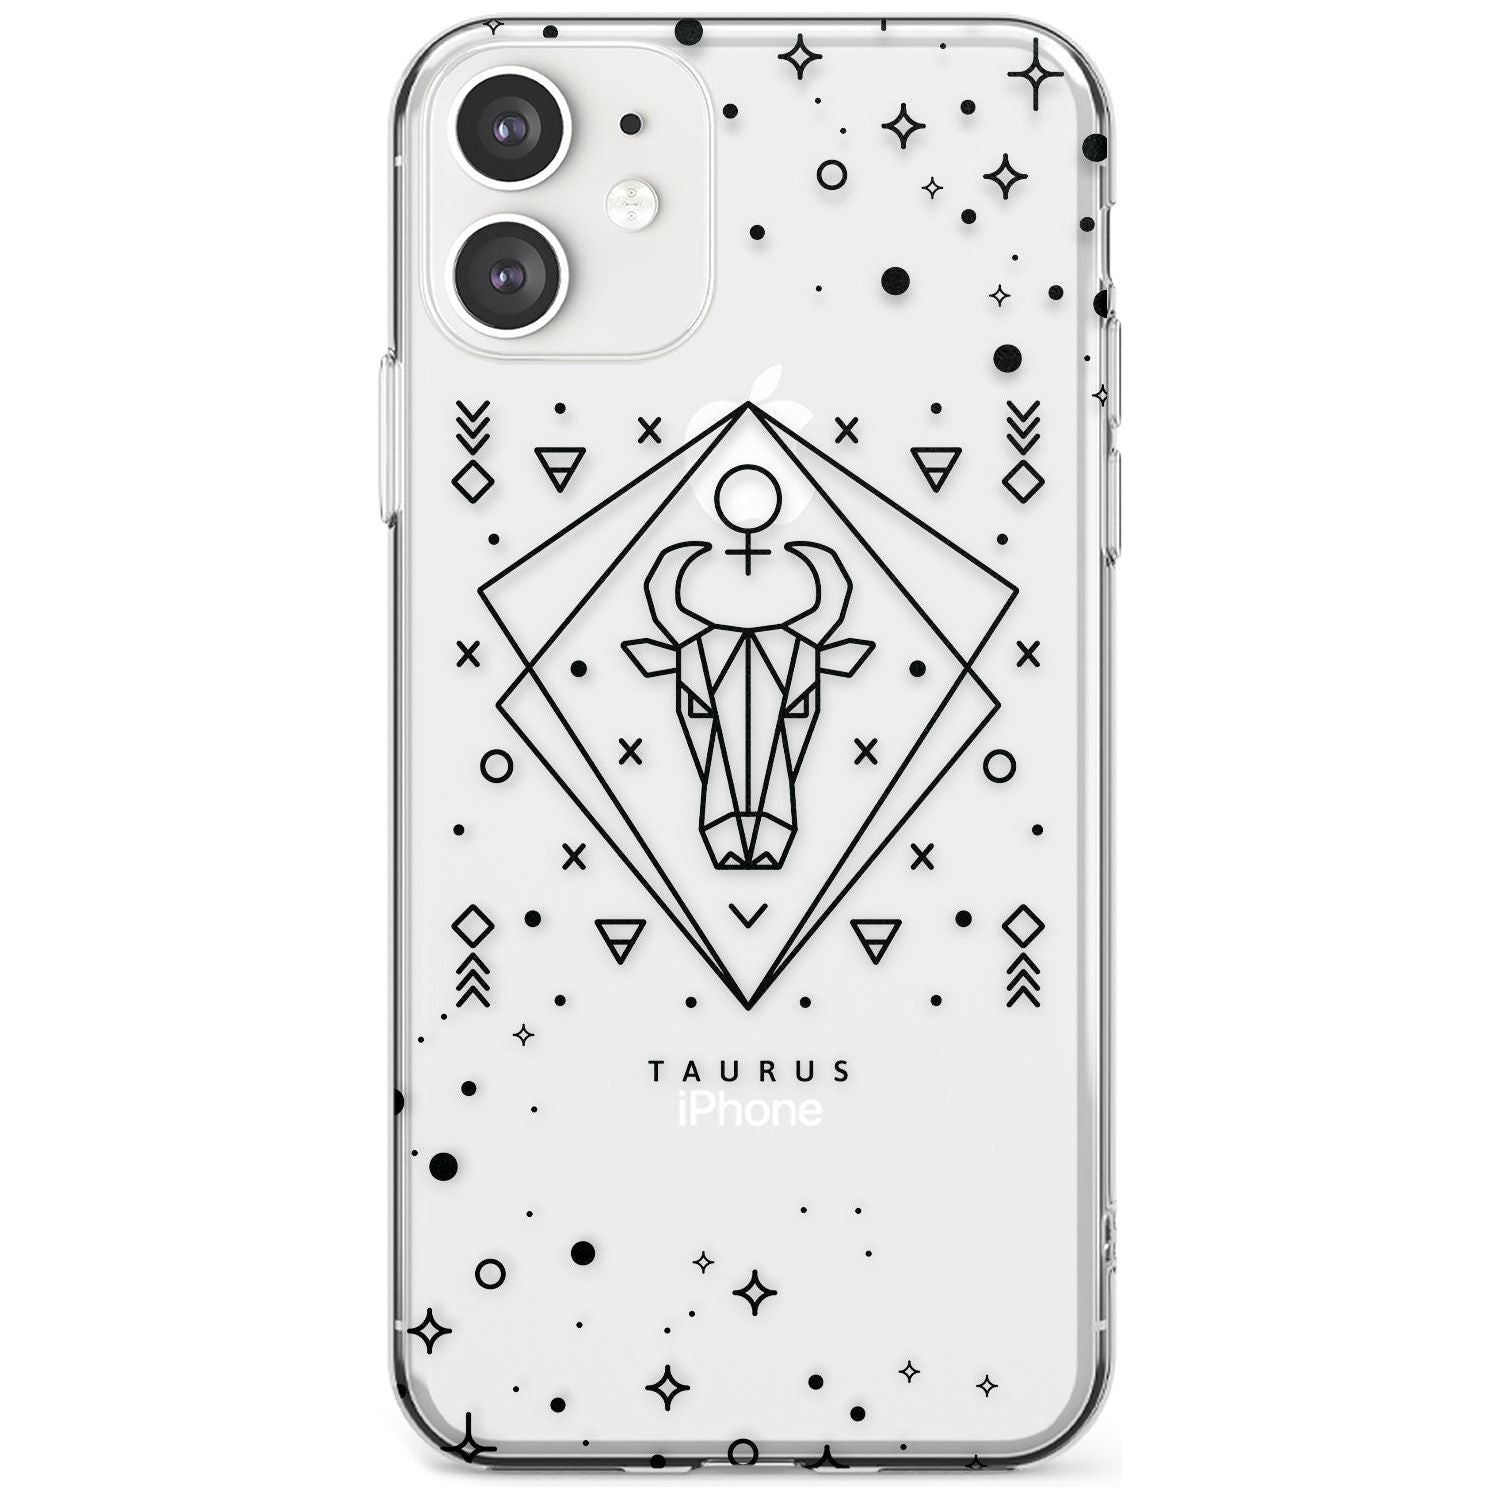 Taurus Emblem - Transparent Design Slim TPU Phone Case for iPhone 11